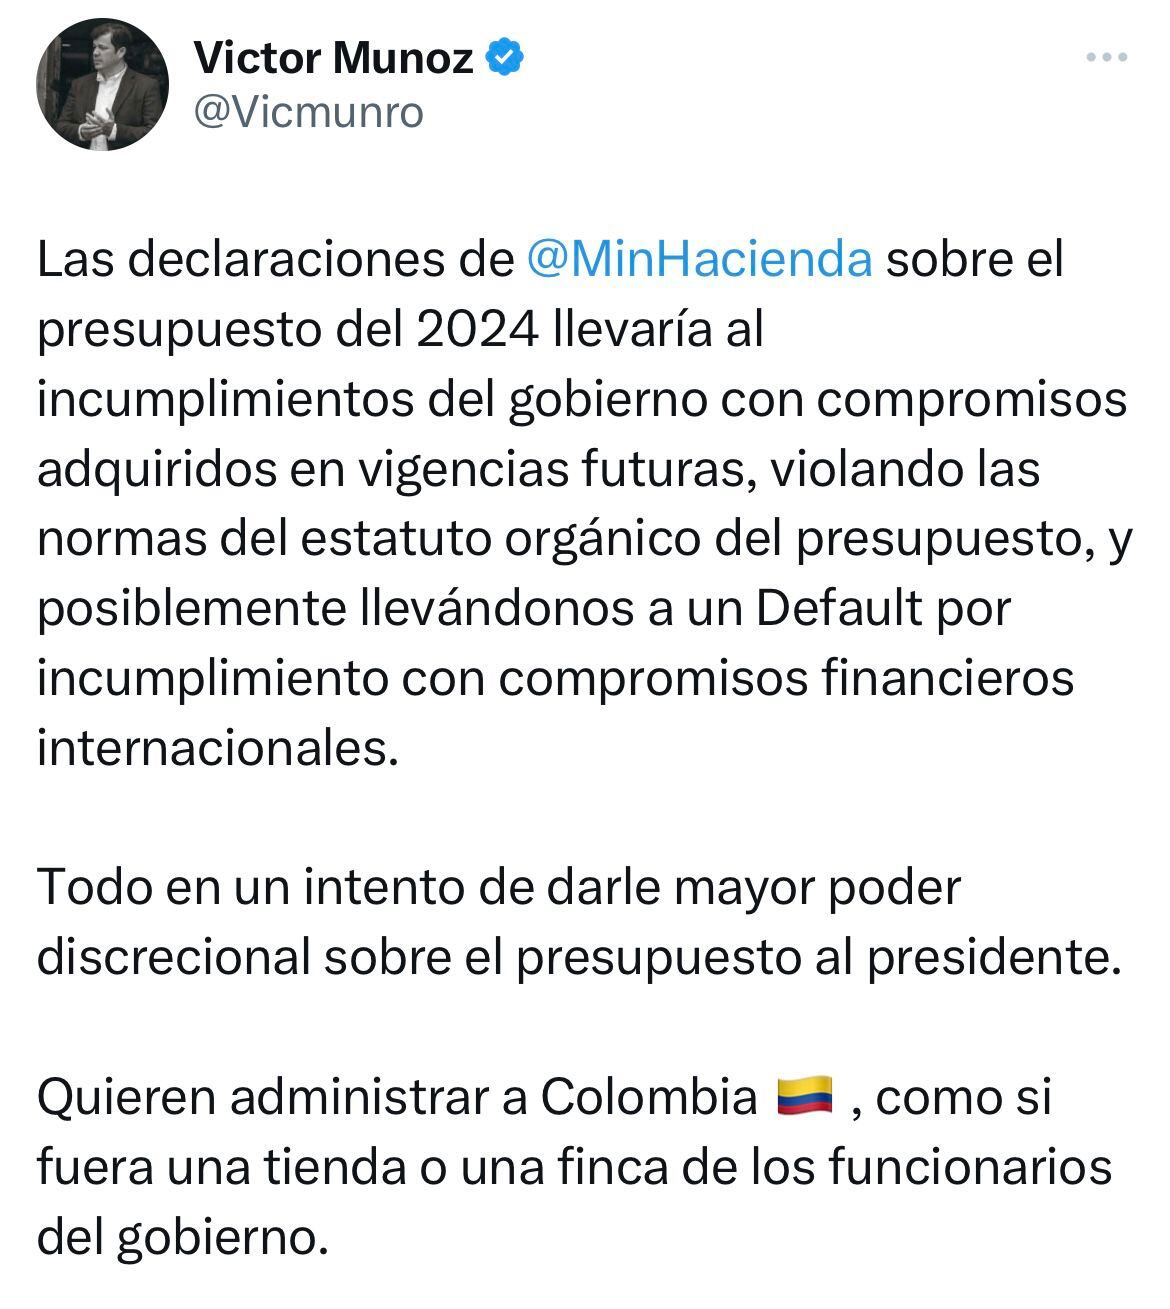 “quieren administrar a colombia, como si fuera una tienda”: agudo sablazo de exfuncionario del expresidente duque al gobierno petro